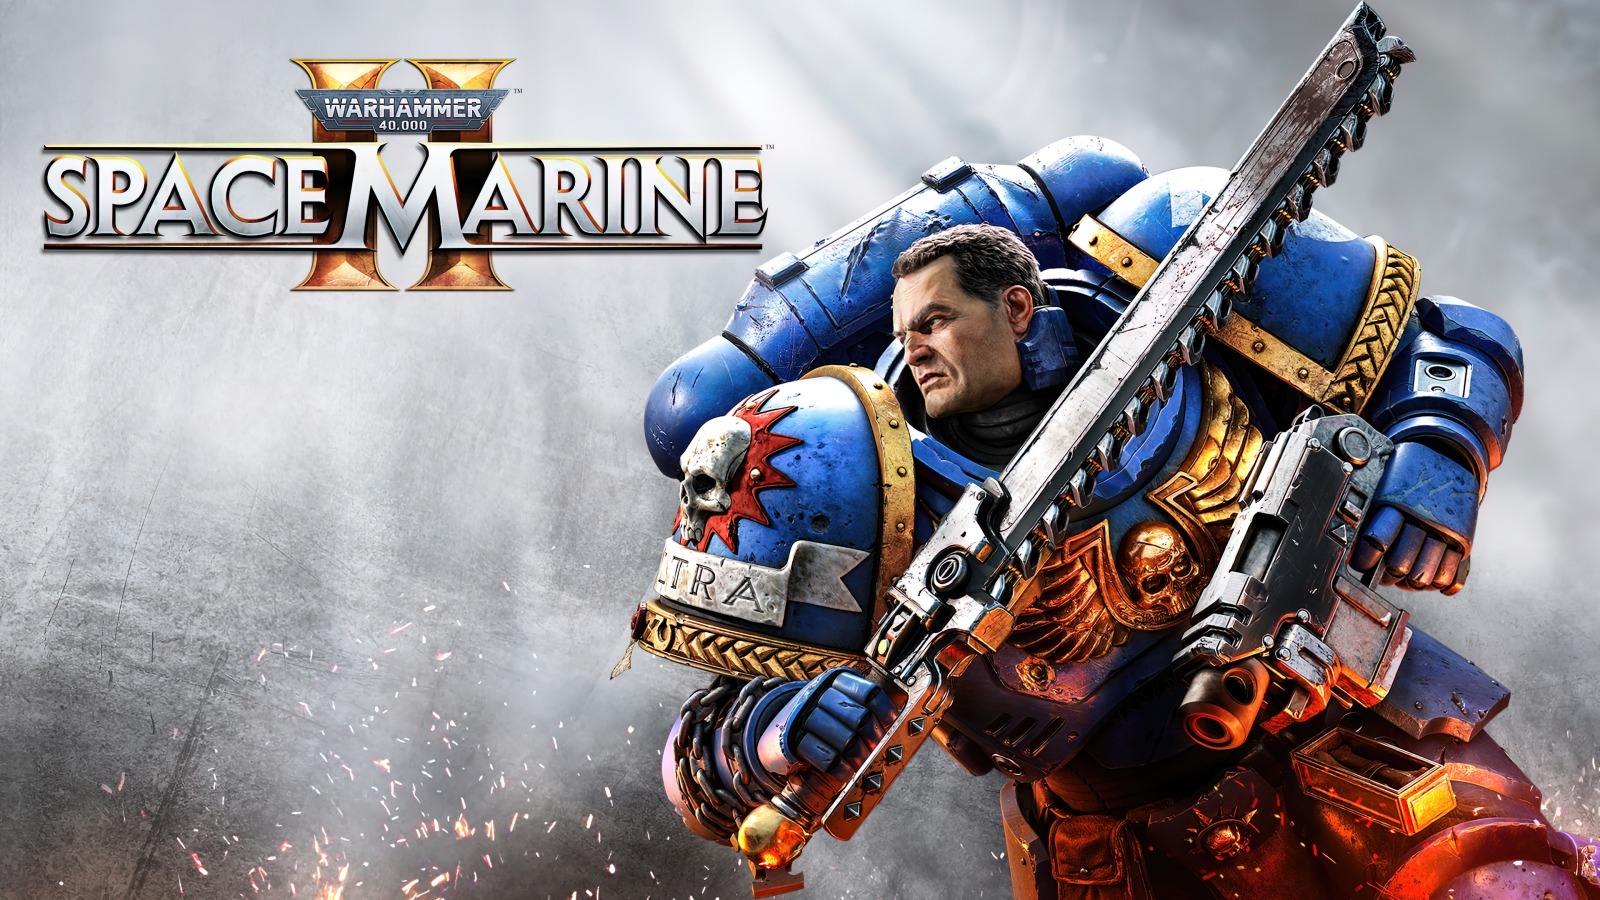 ティラニッドの大群を排除せよ。人類を守れ！
『Warhammer 40,000: Space Marine 2』の通常版／
Gold Edition版がPlayStation(R)5で2024年9月9日発売予定！
新マルチプレイヤーモードのトレーラーを公開！
現在予約受付中！